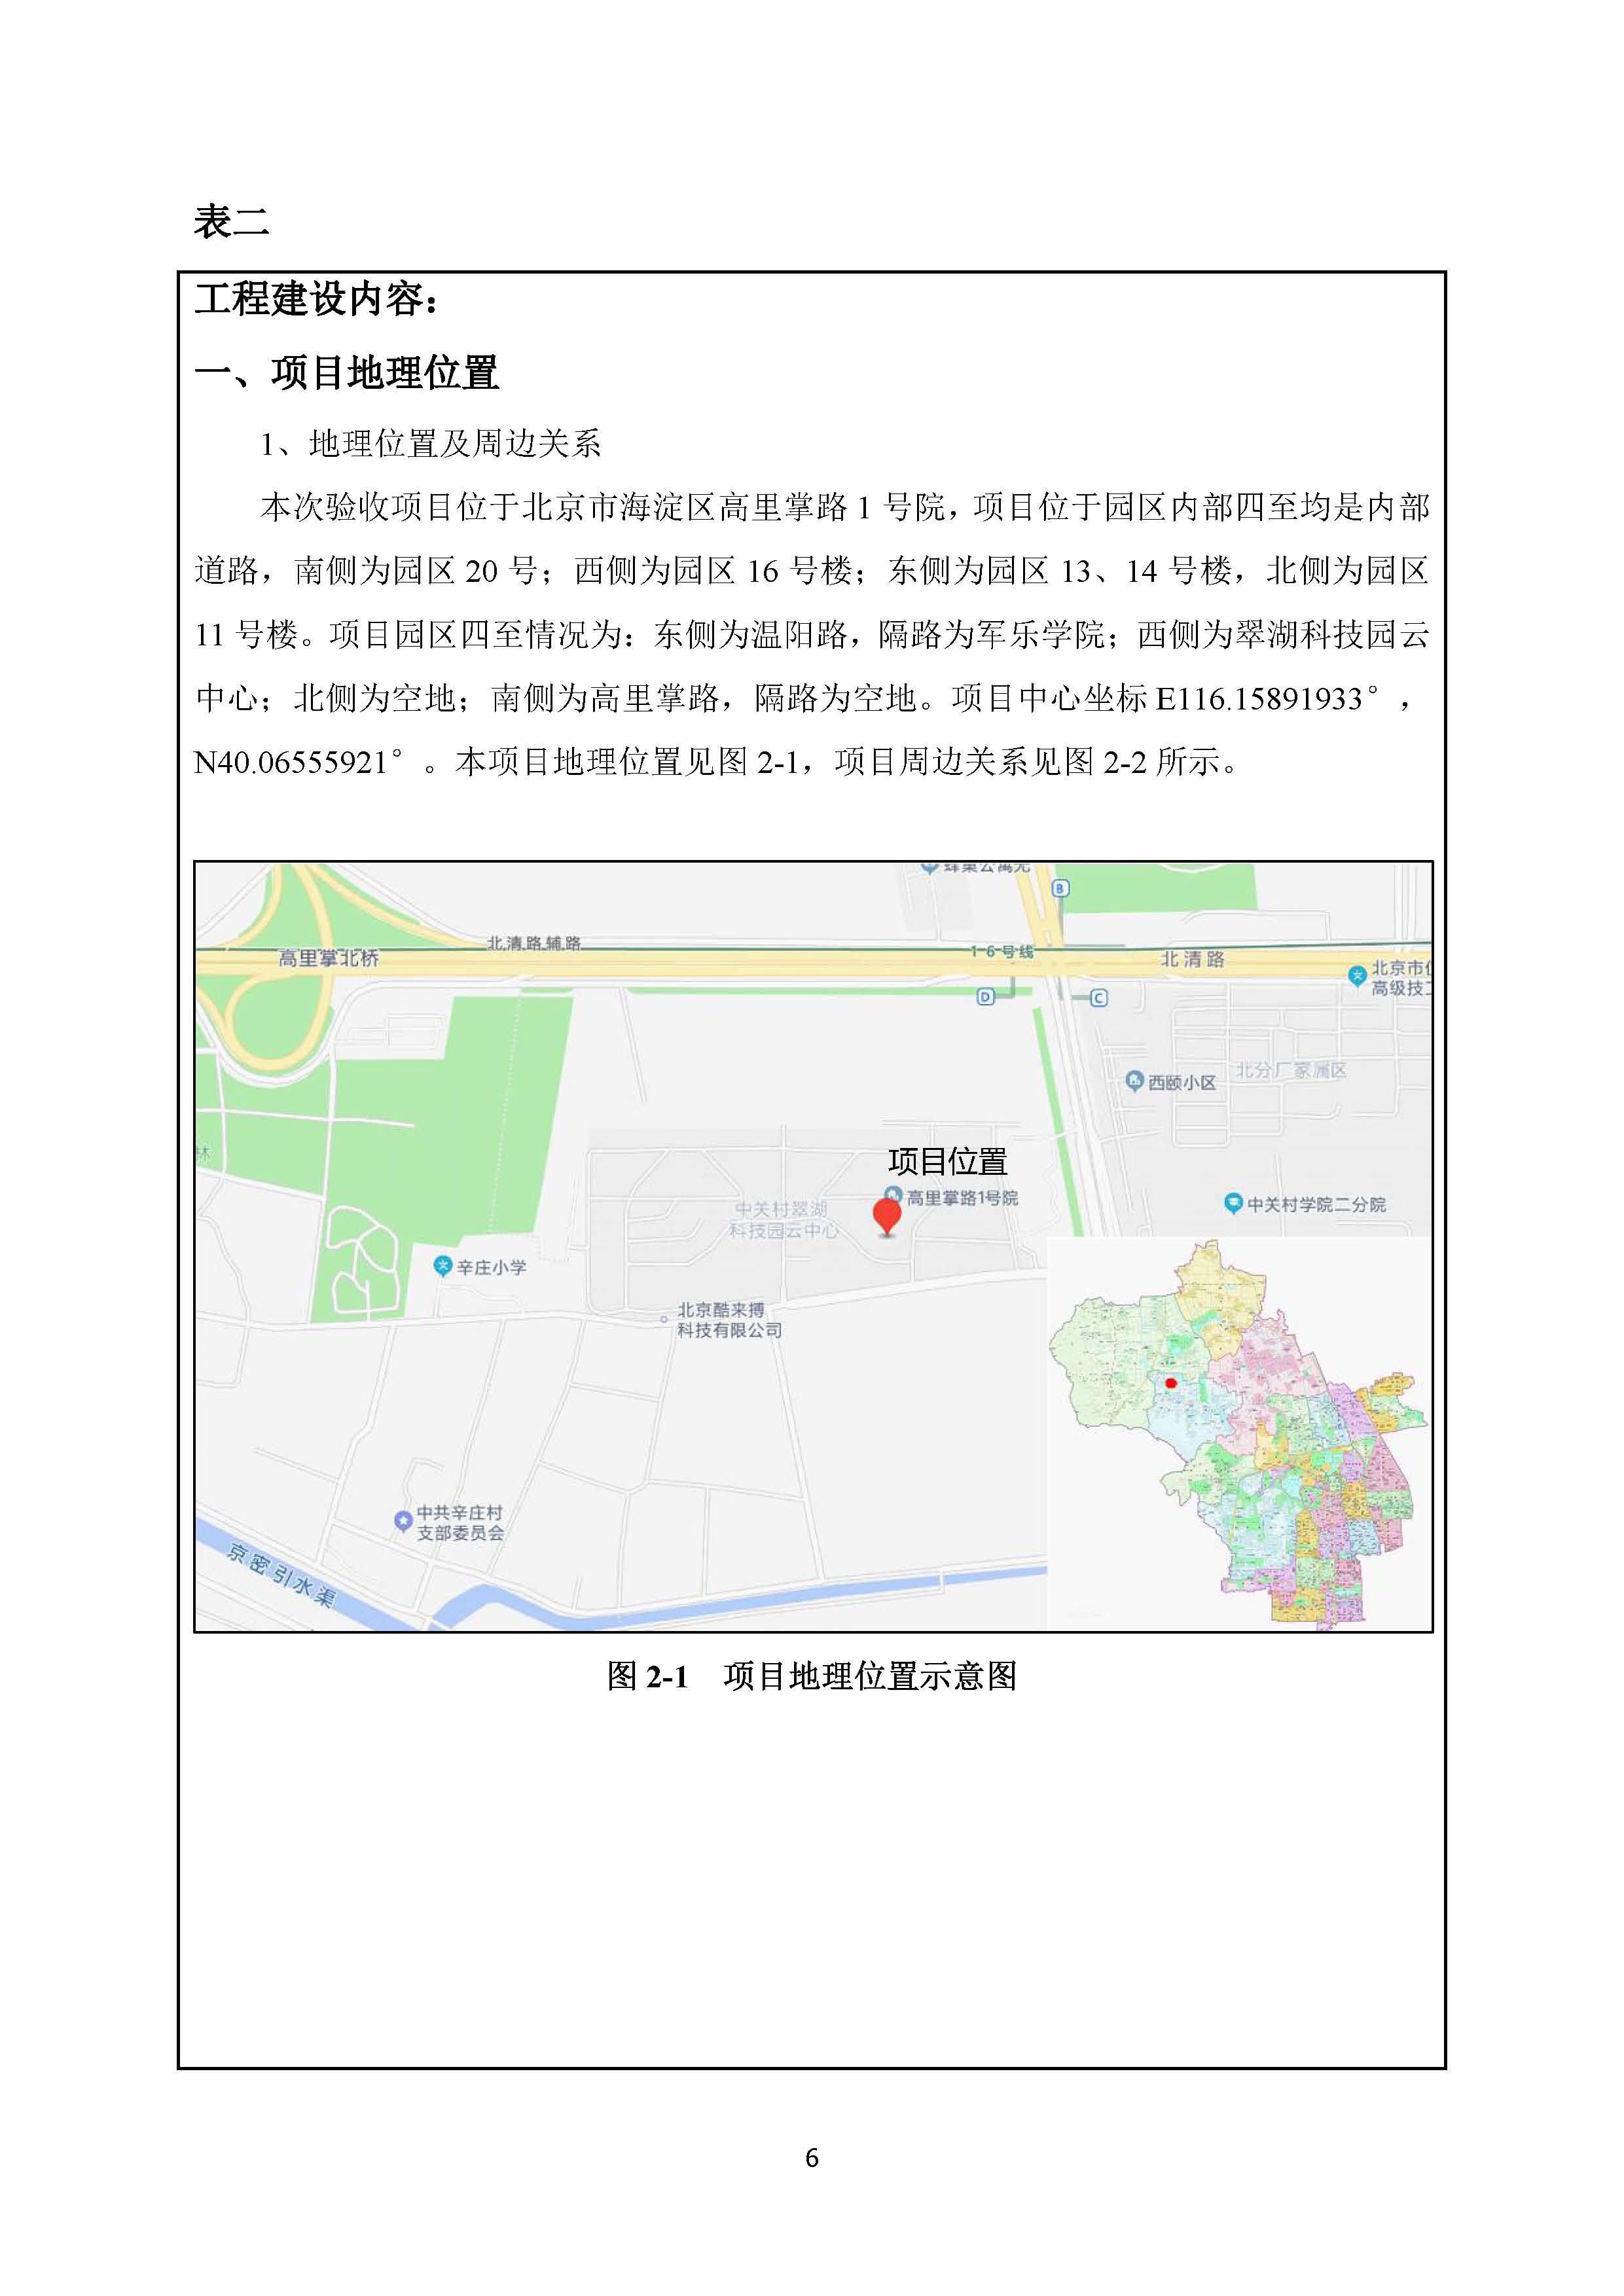 北京博瑞莱智能科技集团有限公司项目竣工环境保护验收监测报告全本公示(图10)